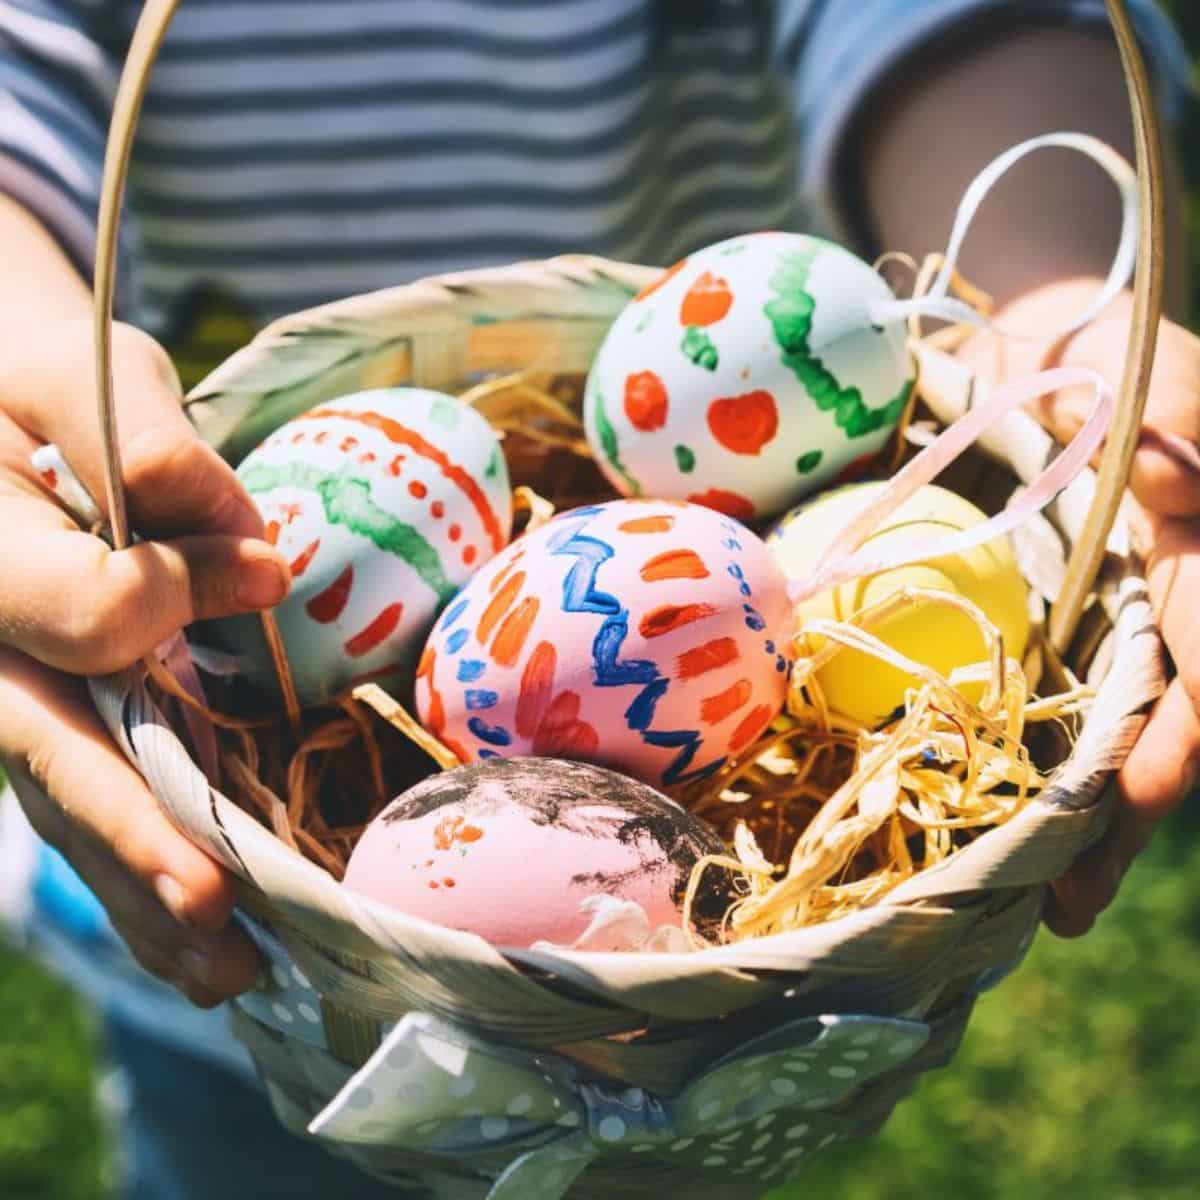 Children holding a basket full of easter eggs.